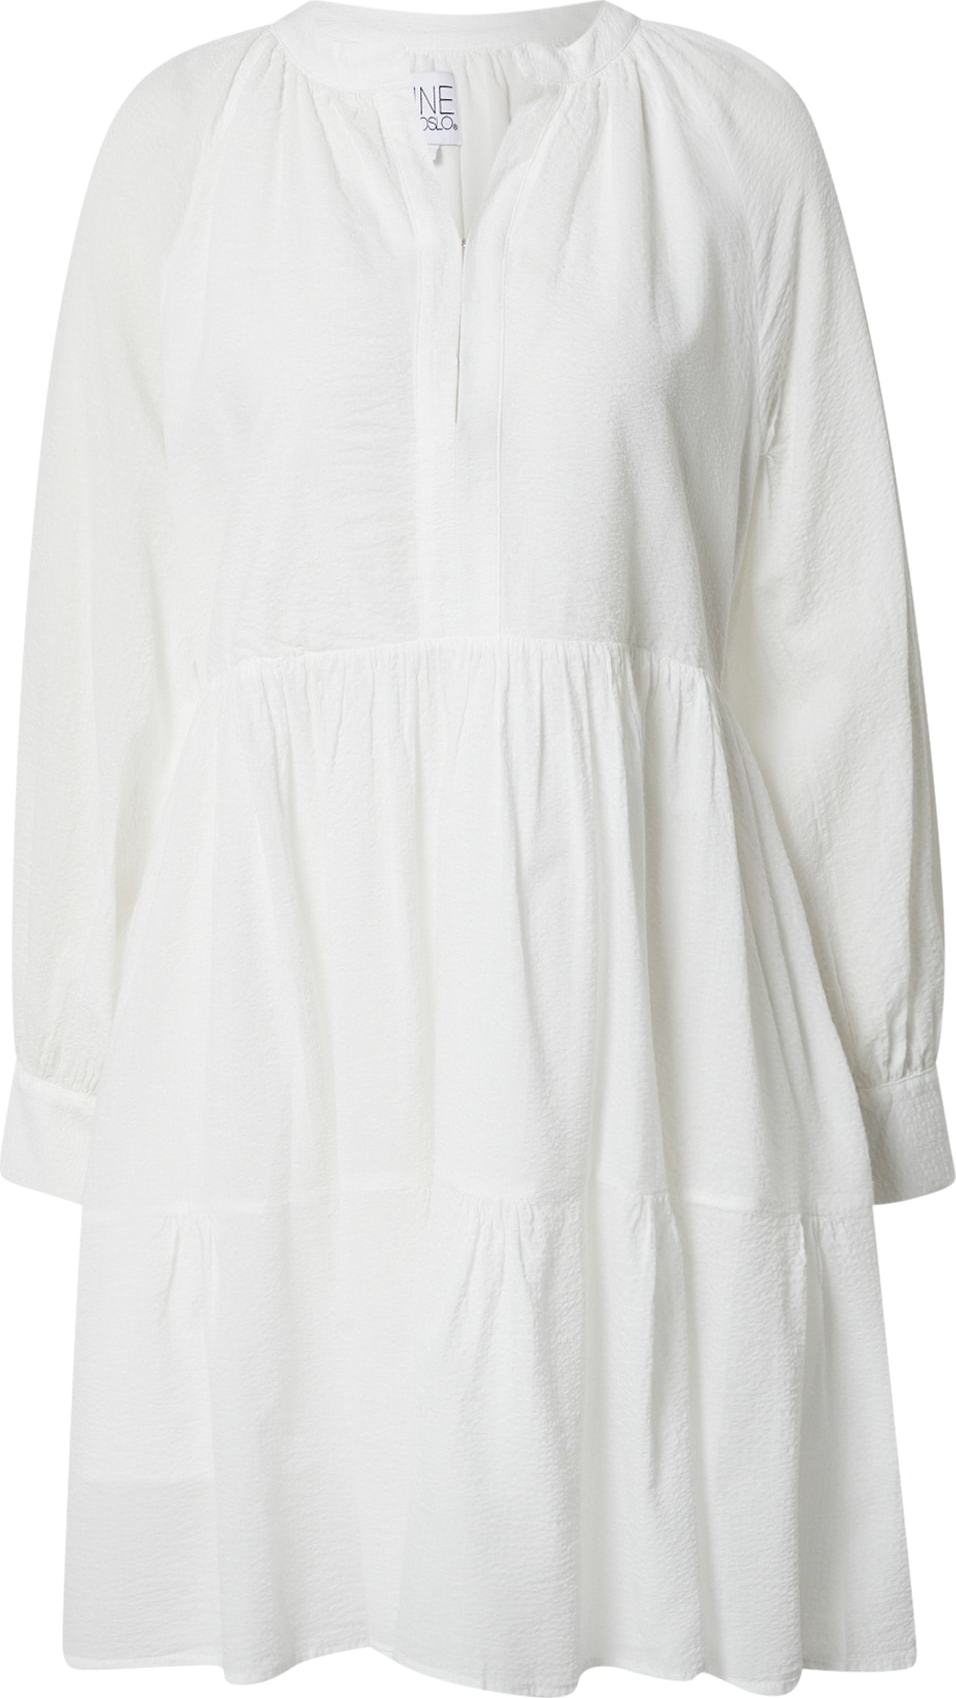 Line of Oslo Košilové šaty 'Daisy' bílá